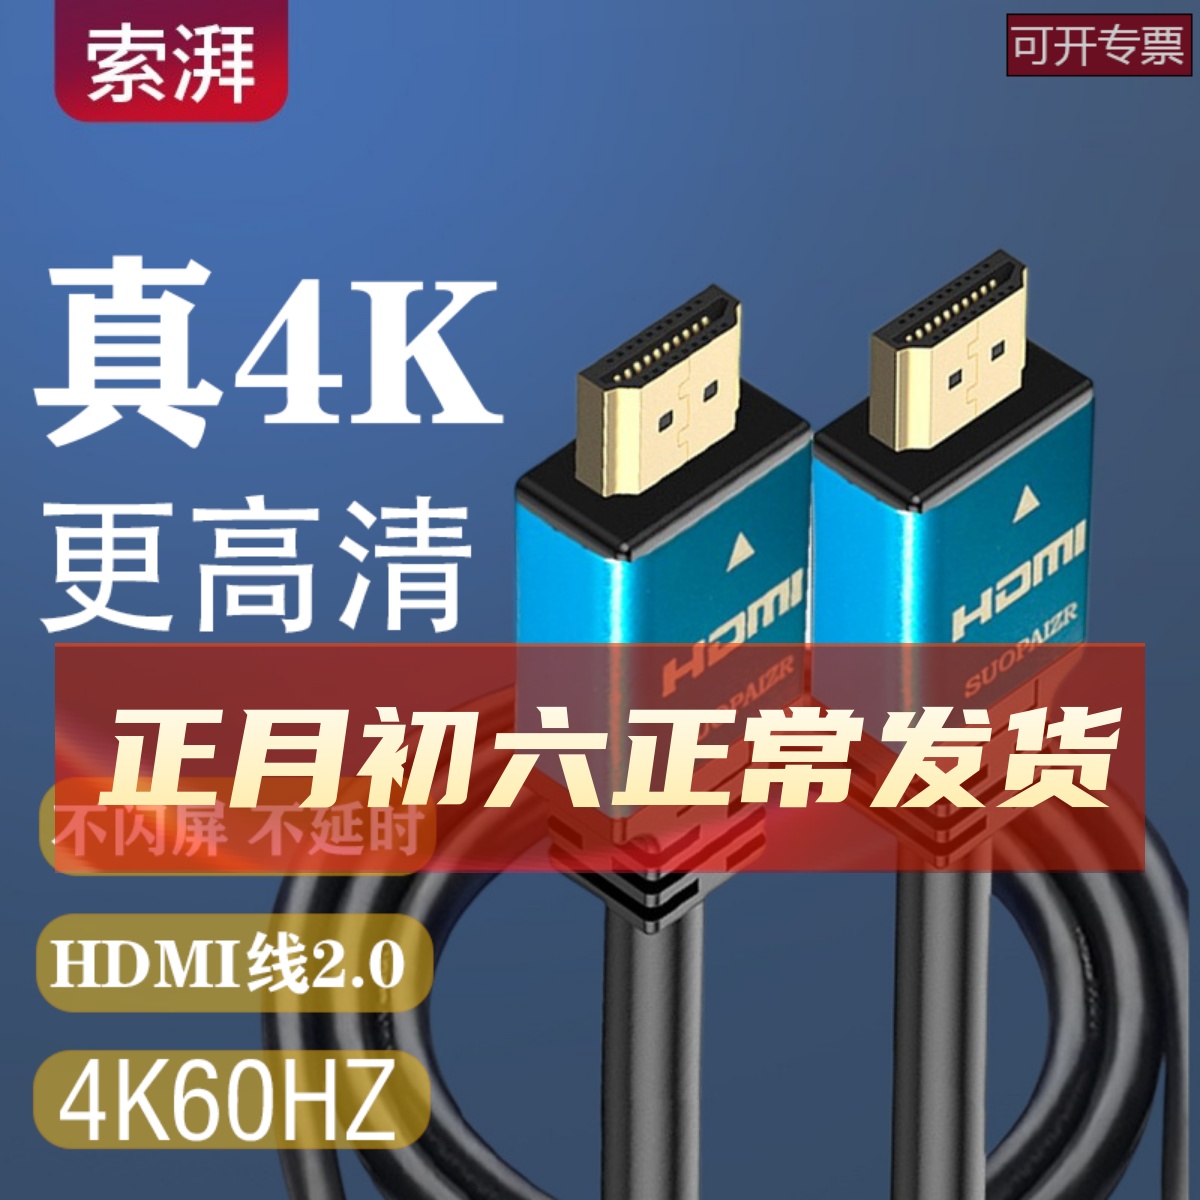 2.0HDMI ケーブル HD ケーブル 4k TV 接続ケーブル 2.1hdni データケーブル 10 20m 延長ケーブル 144HZ